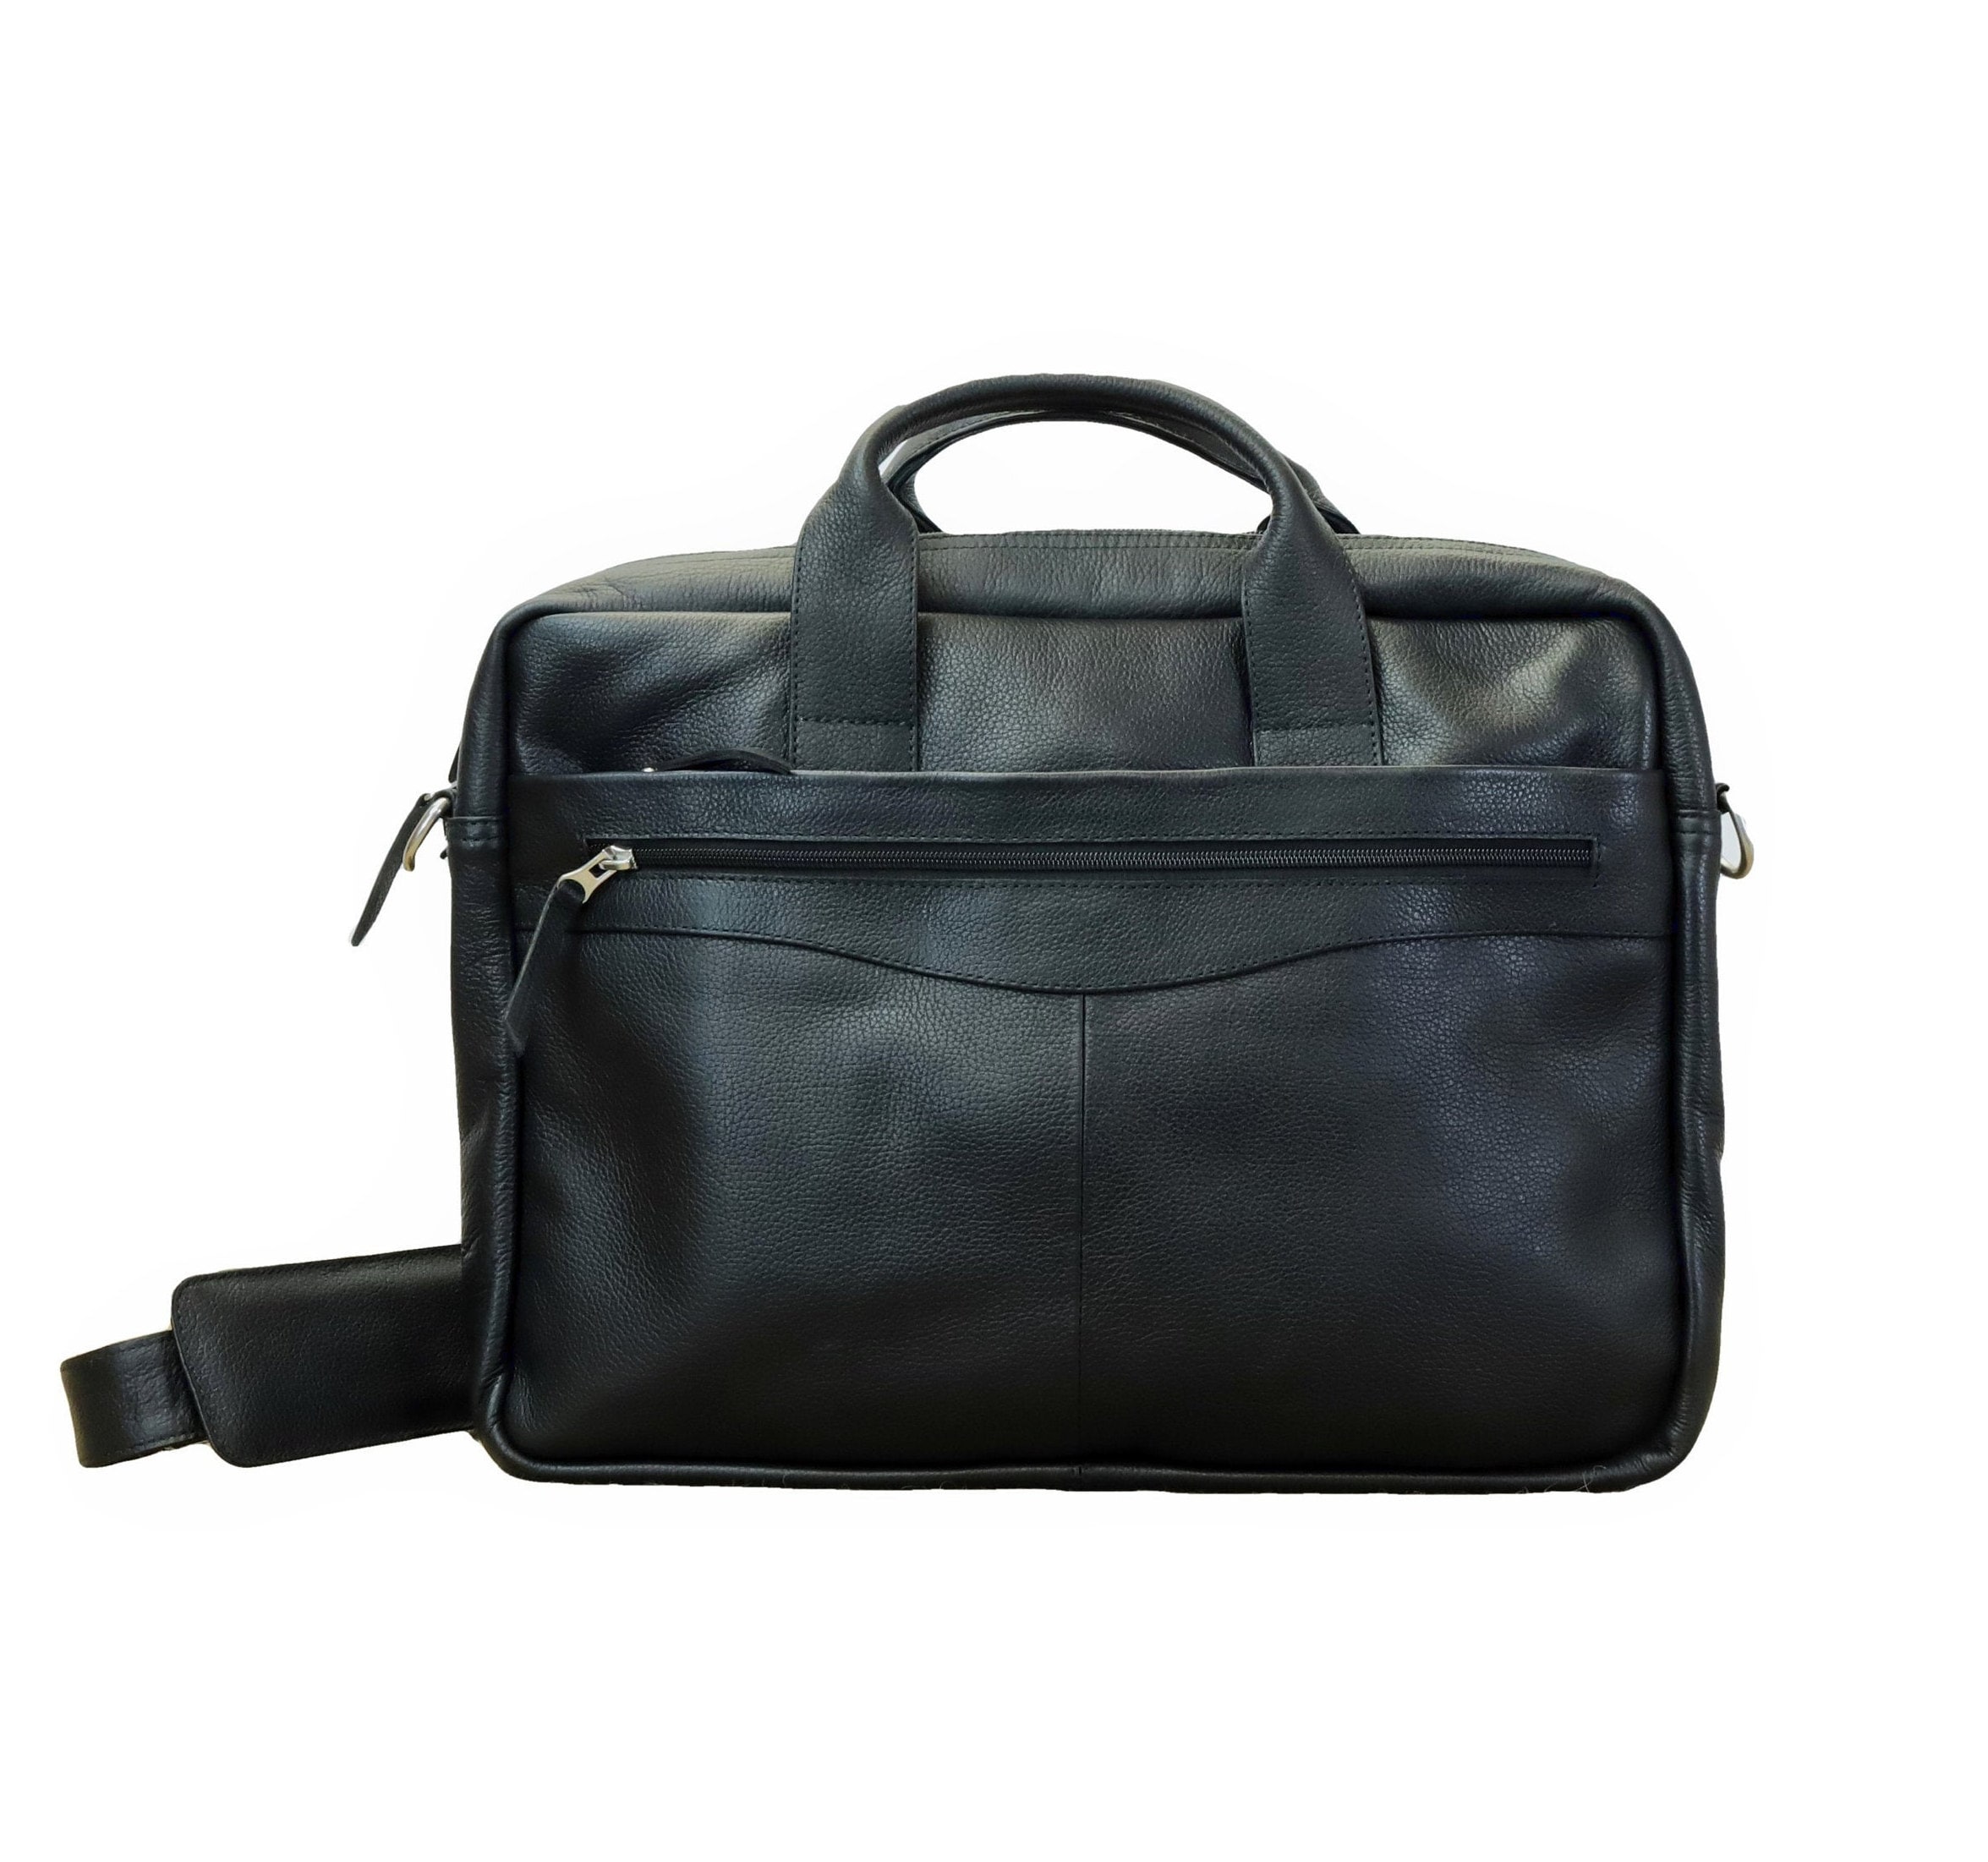 Leather office bag / laptop bag / Men Briefcase | Etsy